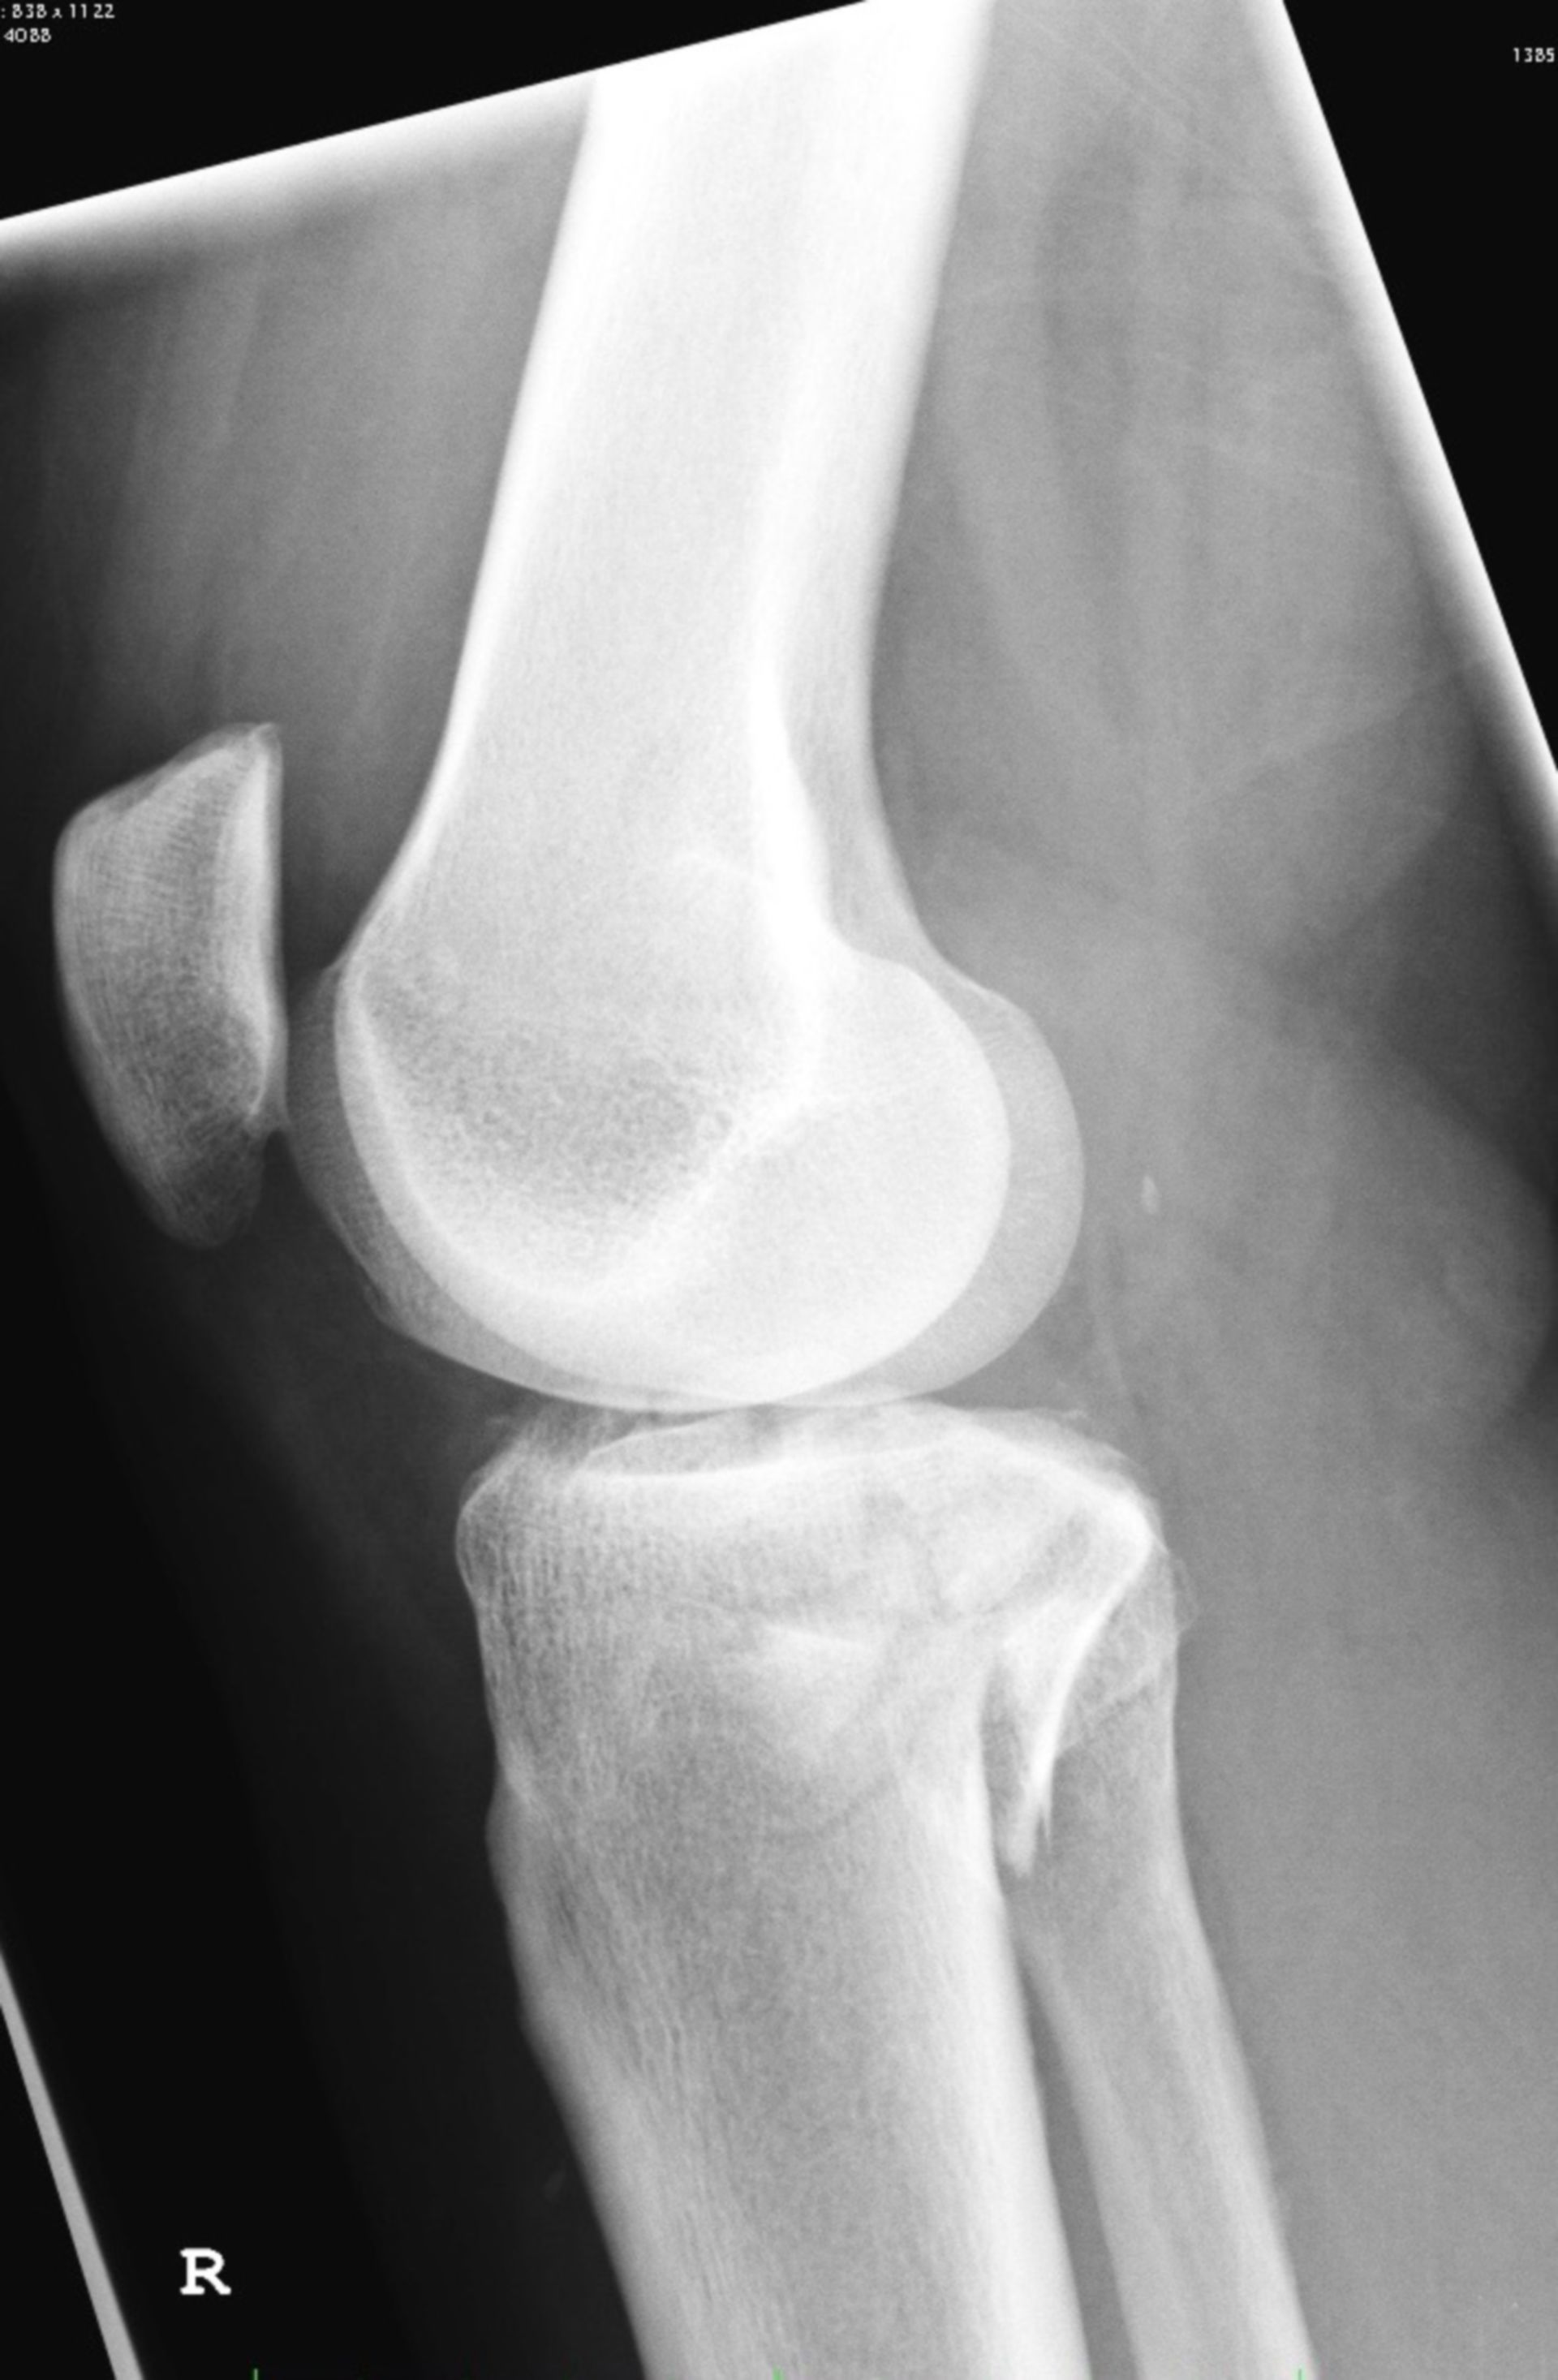 Röntgen des Kniegelenkes von lateral und es zeigt sich eine Tibiakopffraktur